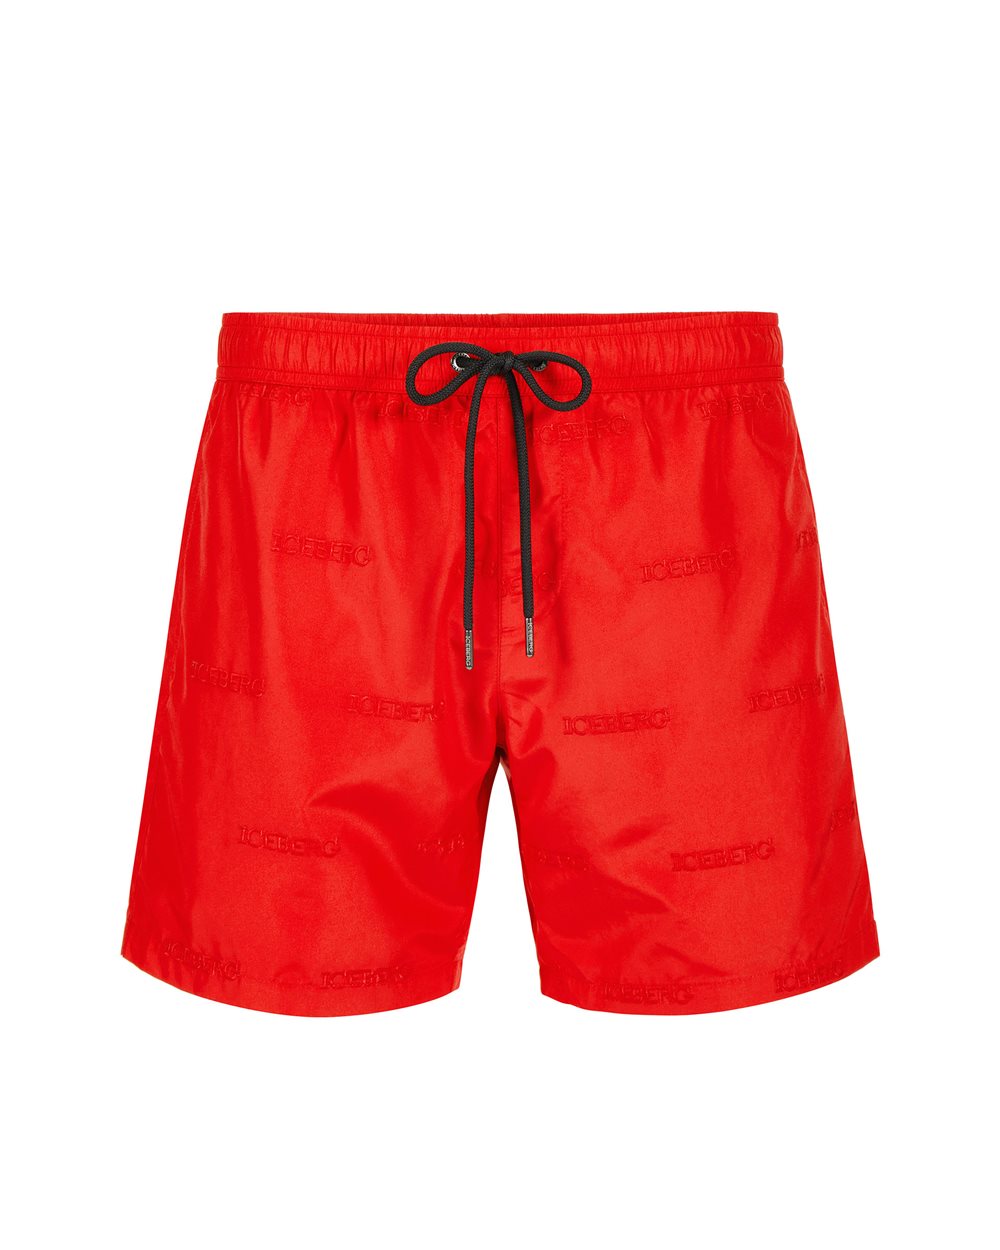 Swim trunks with allover logo - Beachwear | Iceberg - Official Website